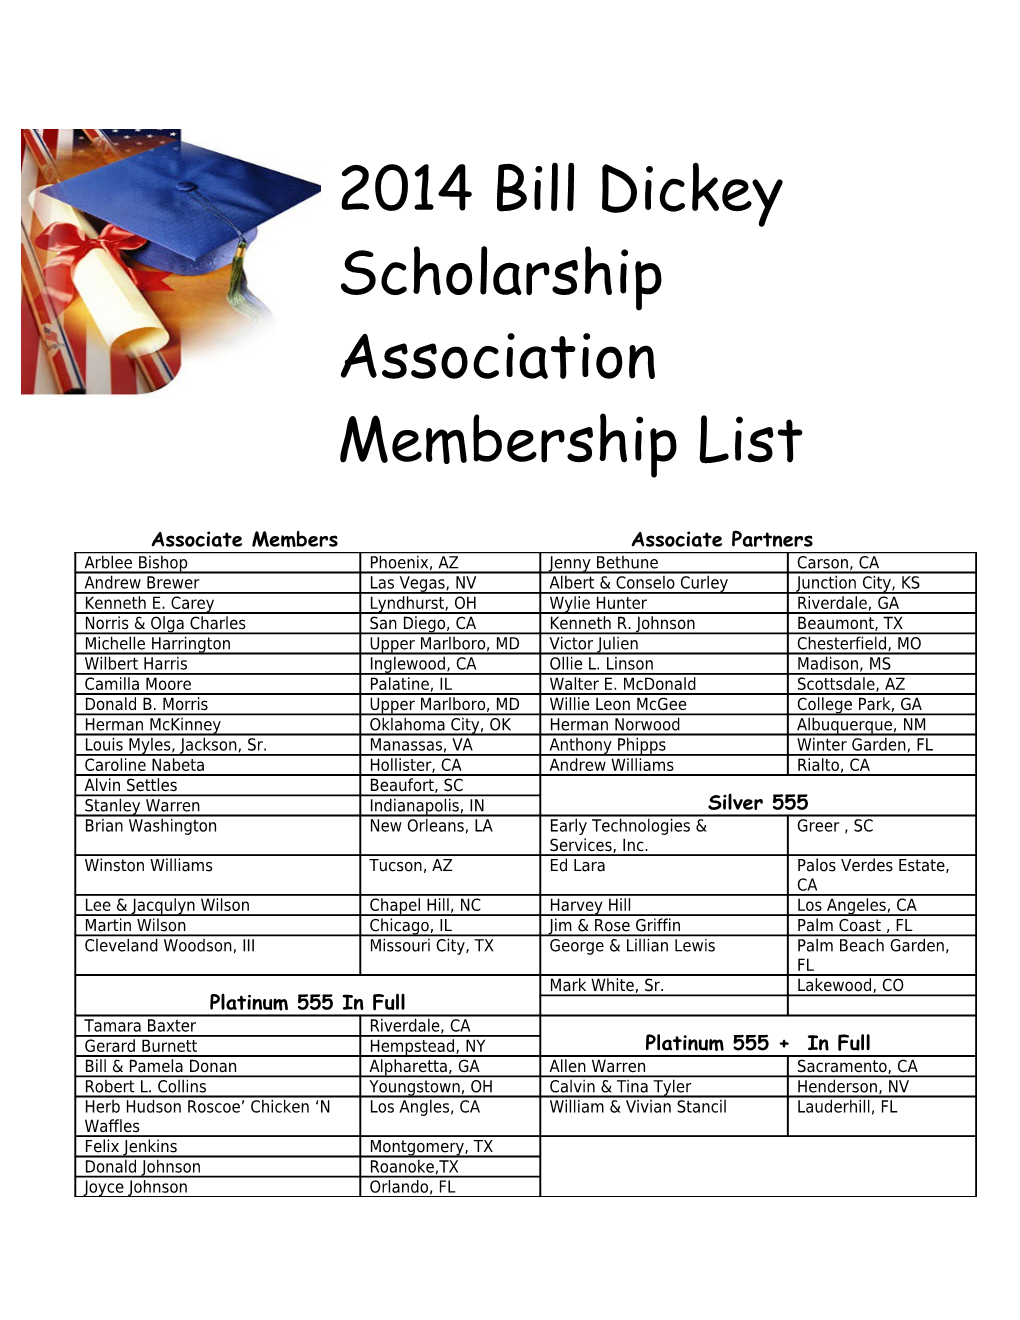 2014 Bill Dickey Scholarship Association